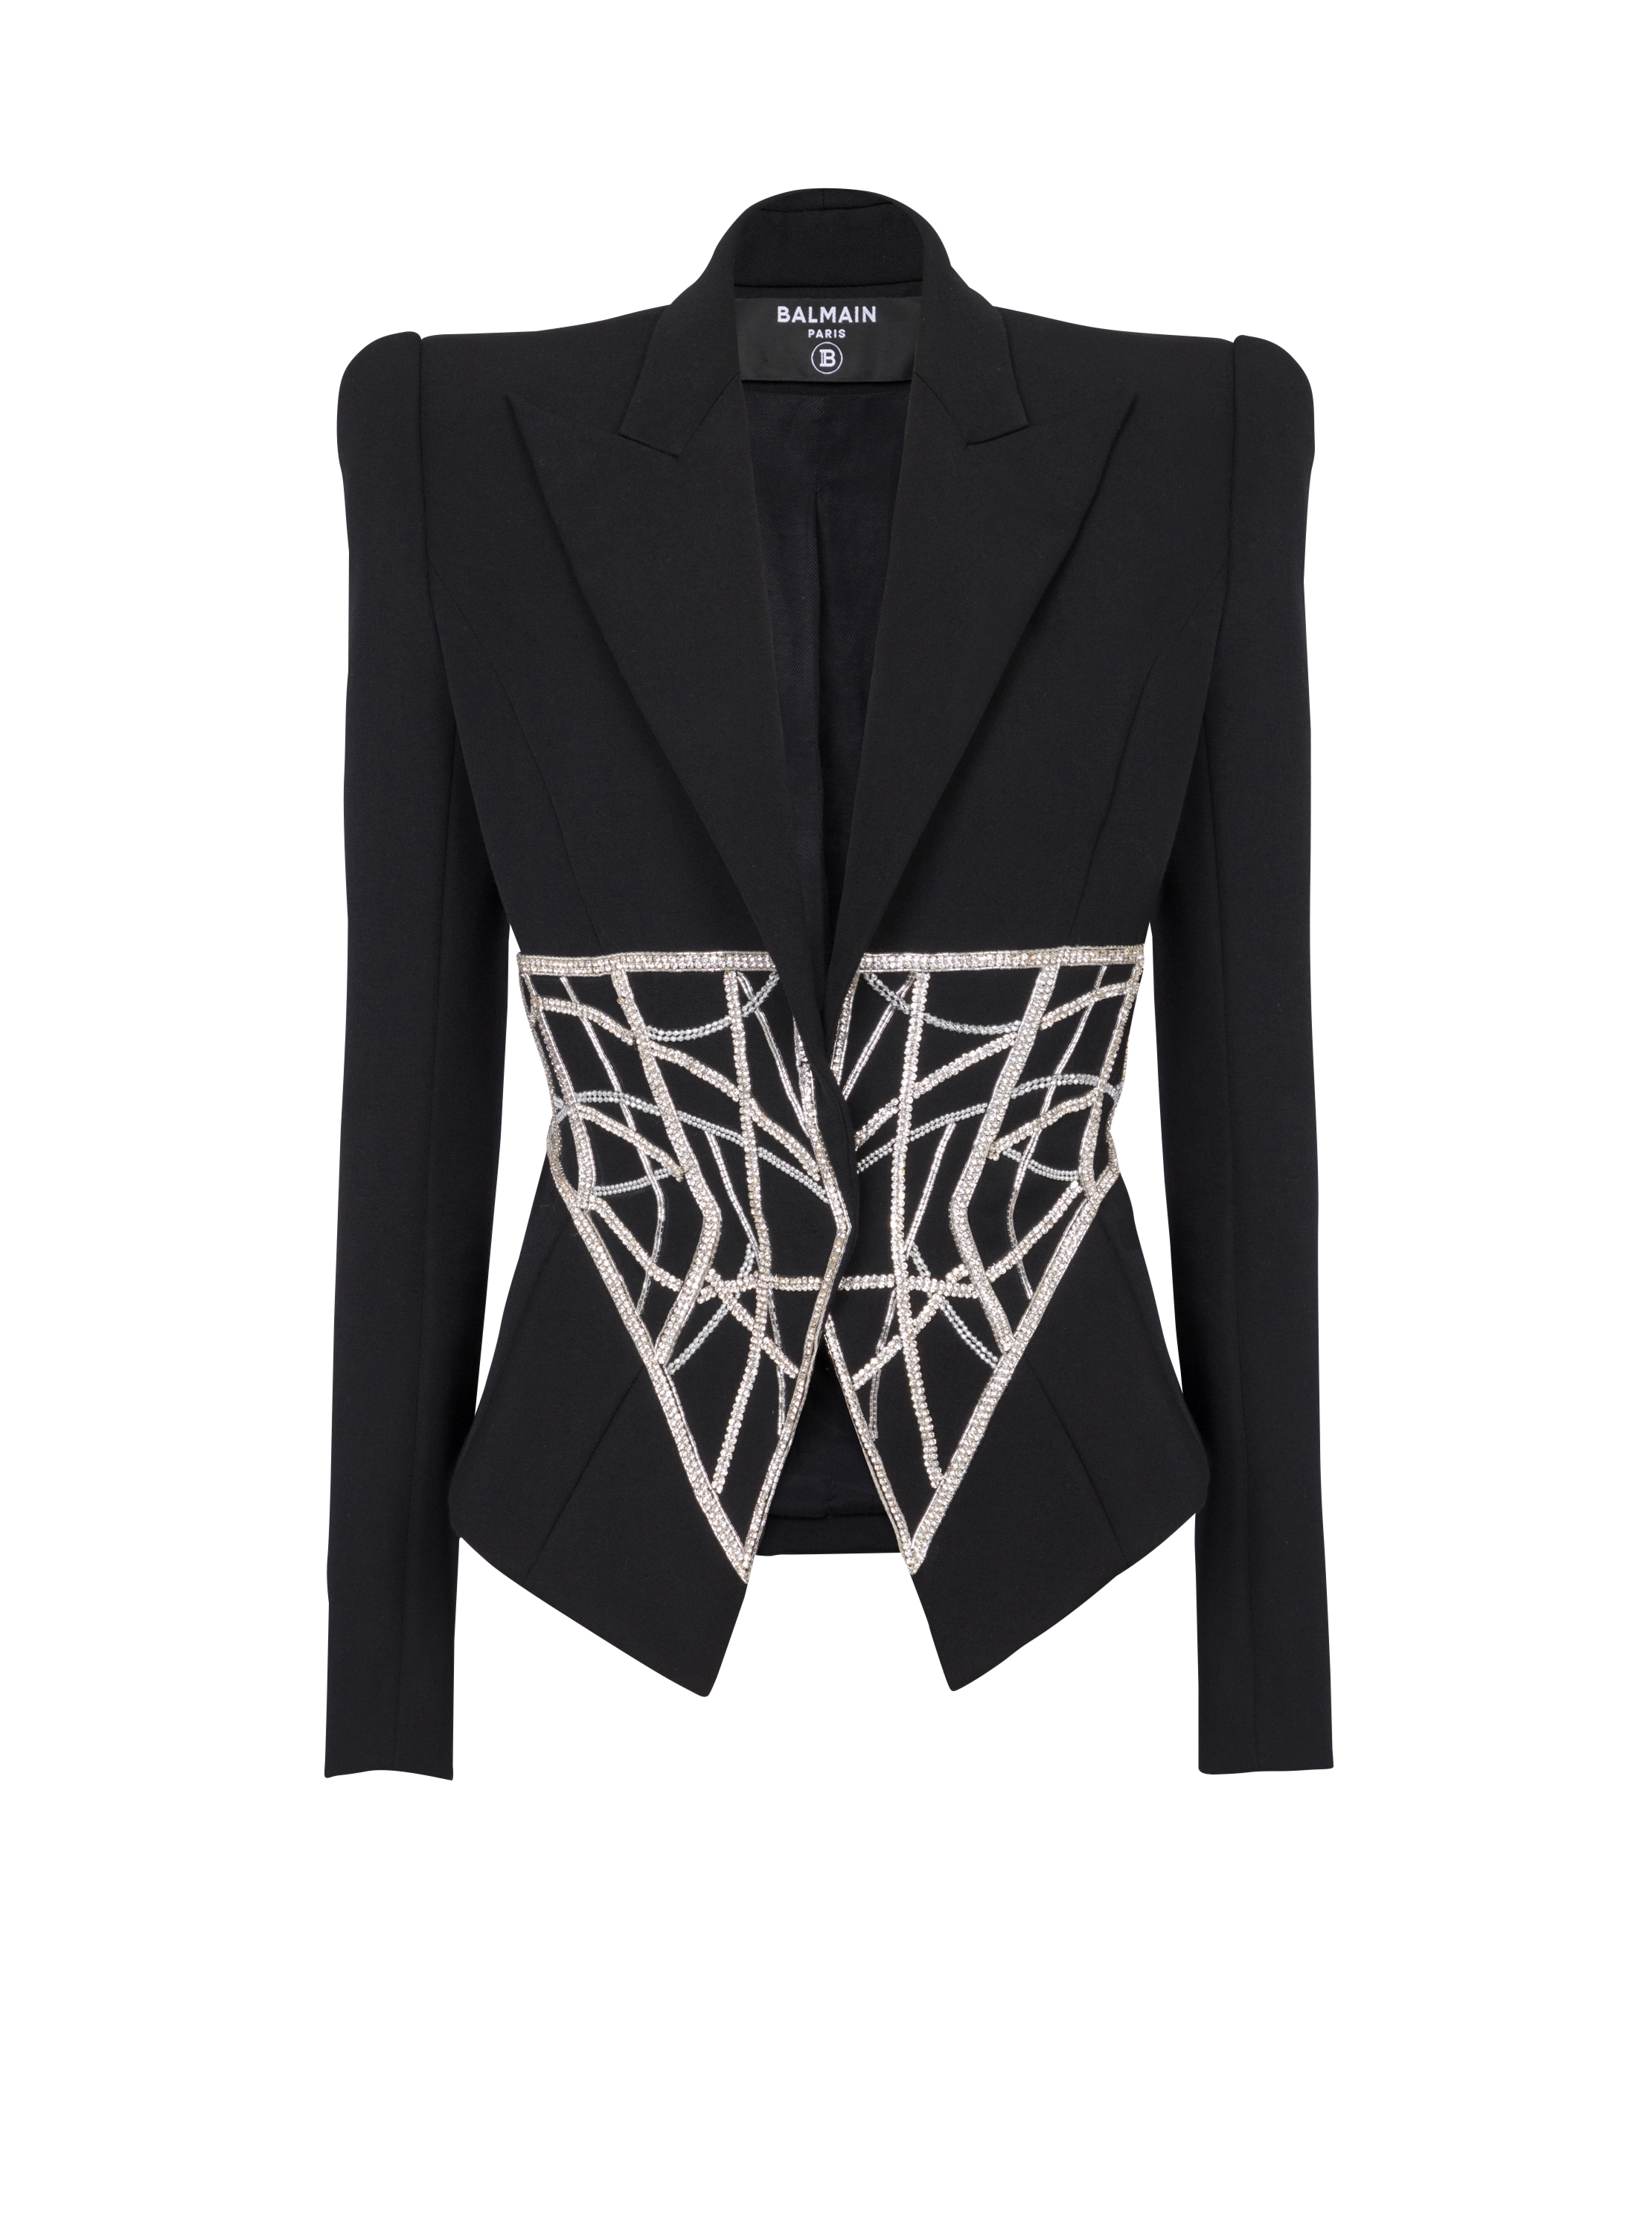 Embroidered slim-fit grain de poudre jacket, black, hi-res